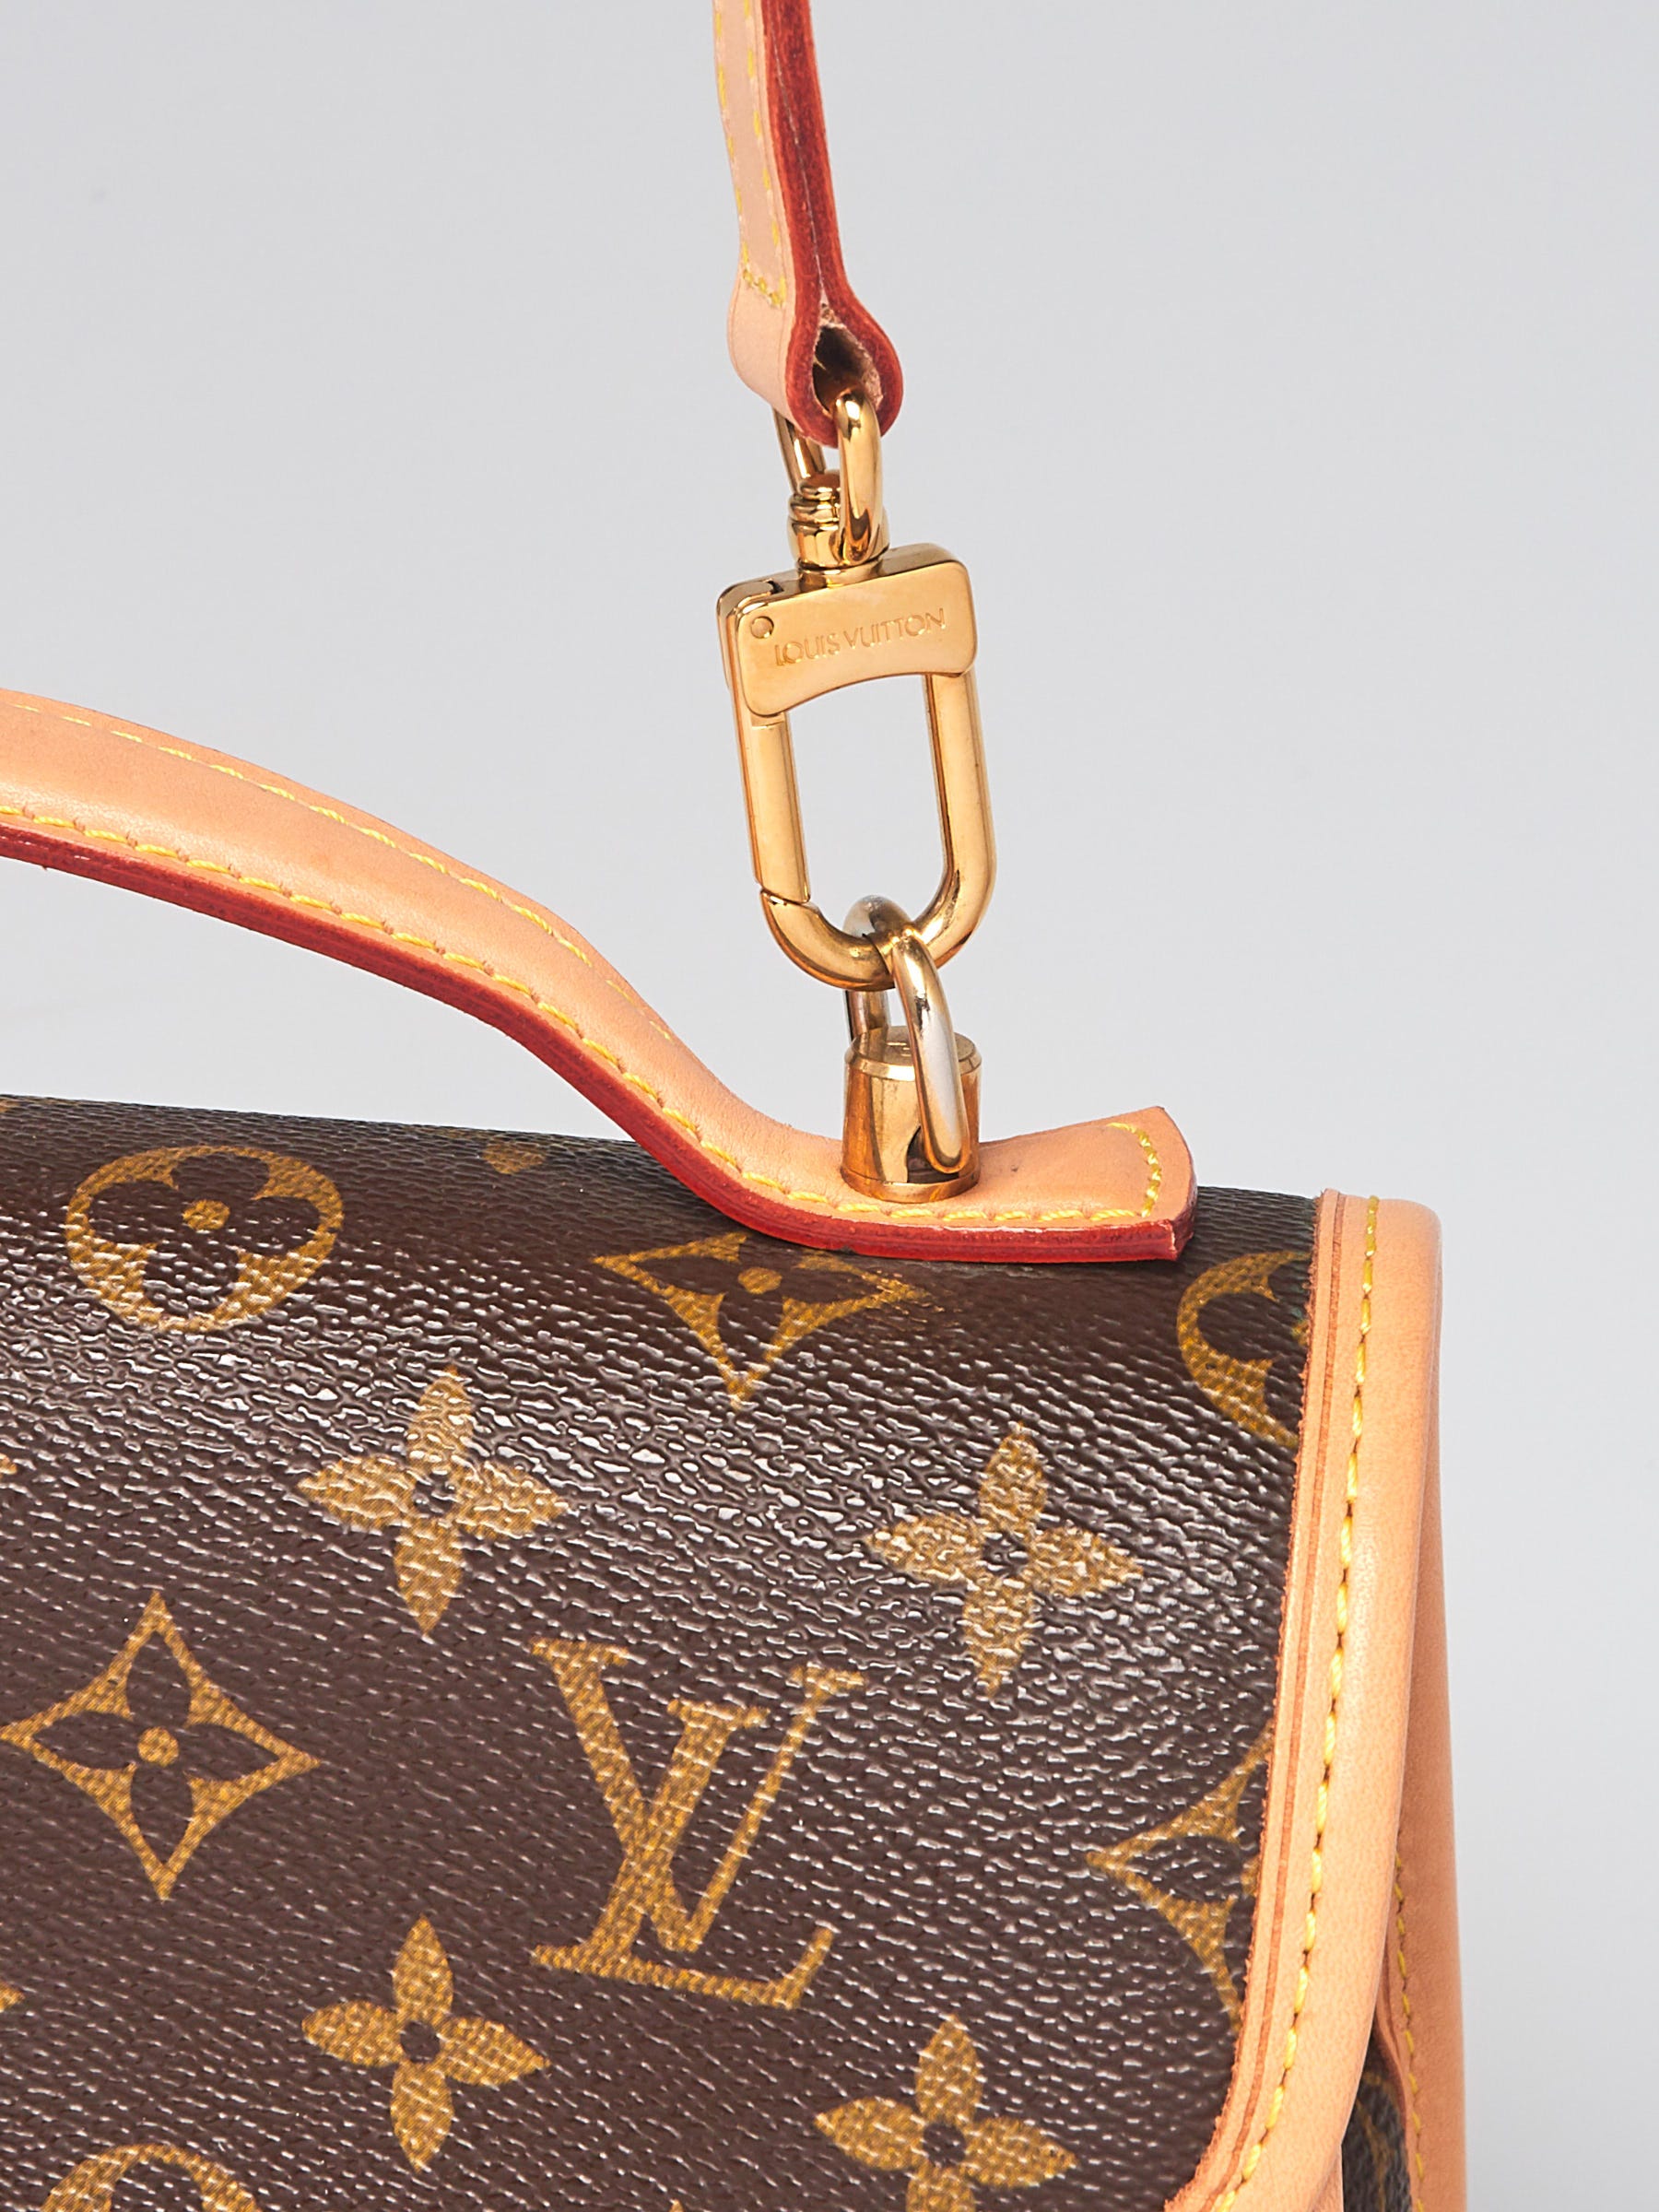 Louis Vuitton, Bags, Lv Authentic Bel Air Pm